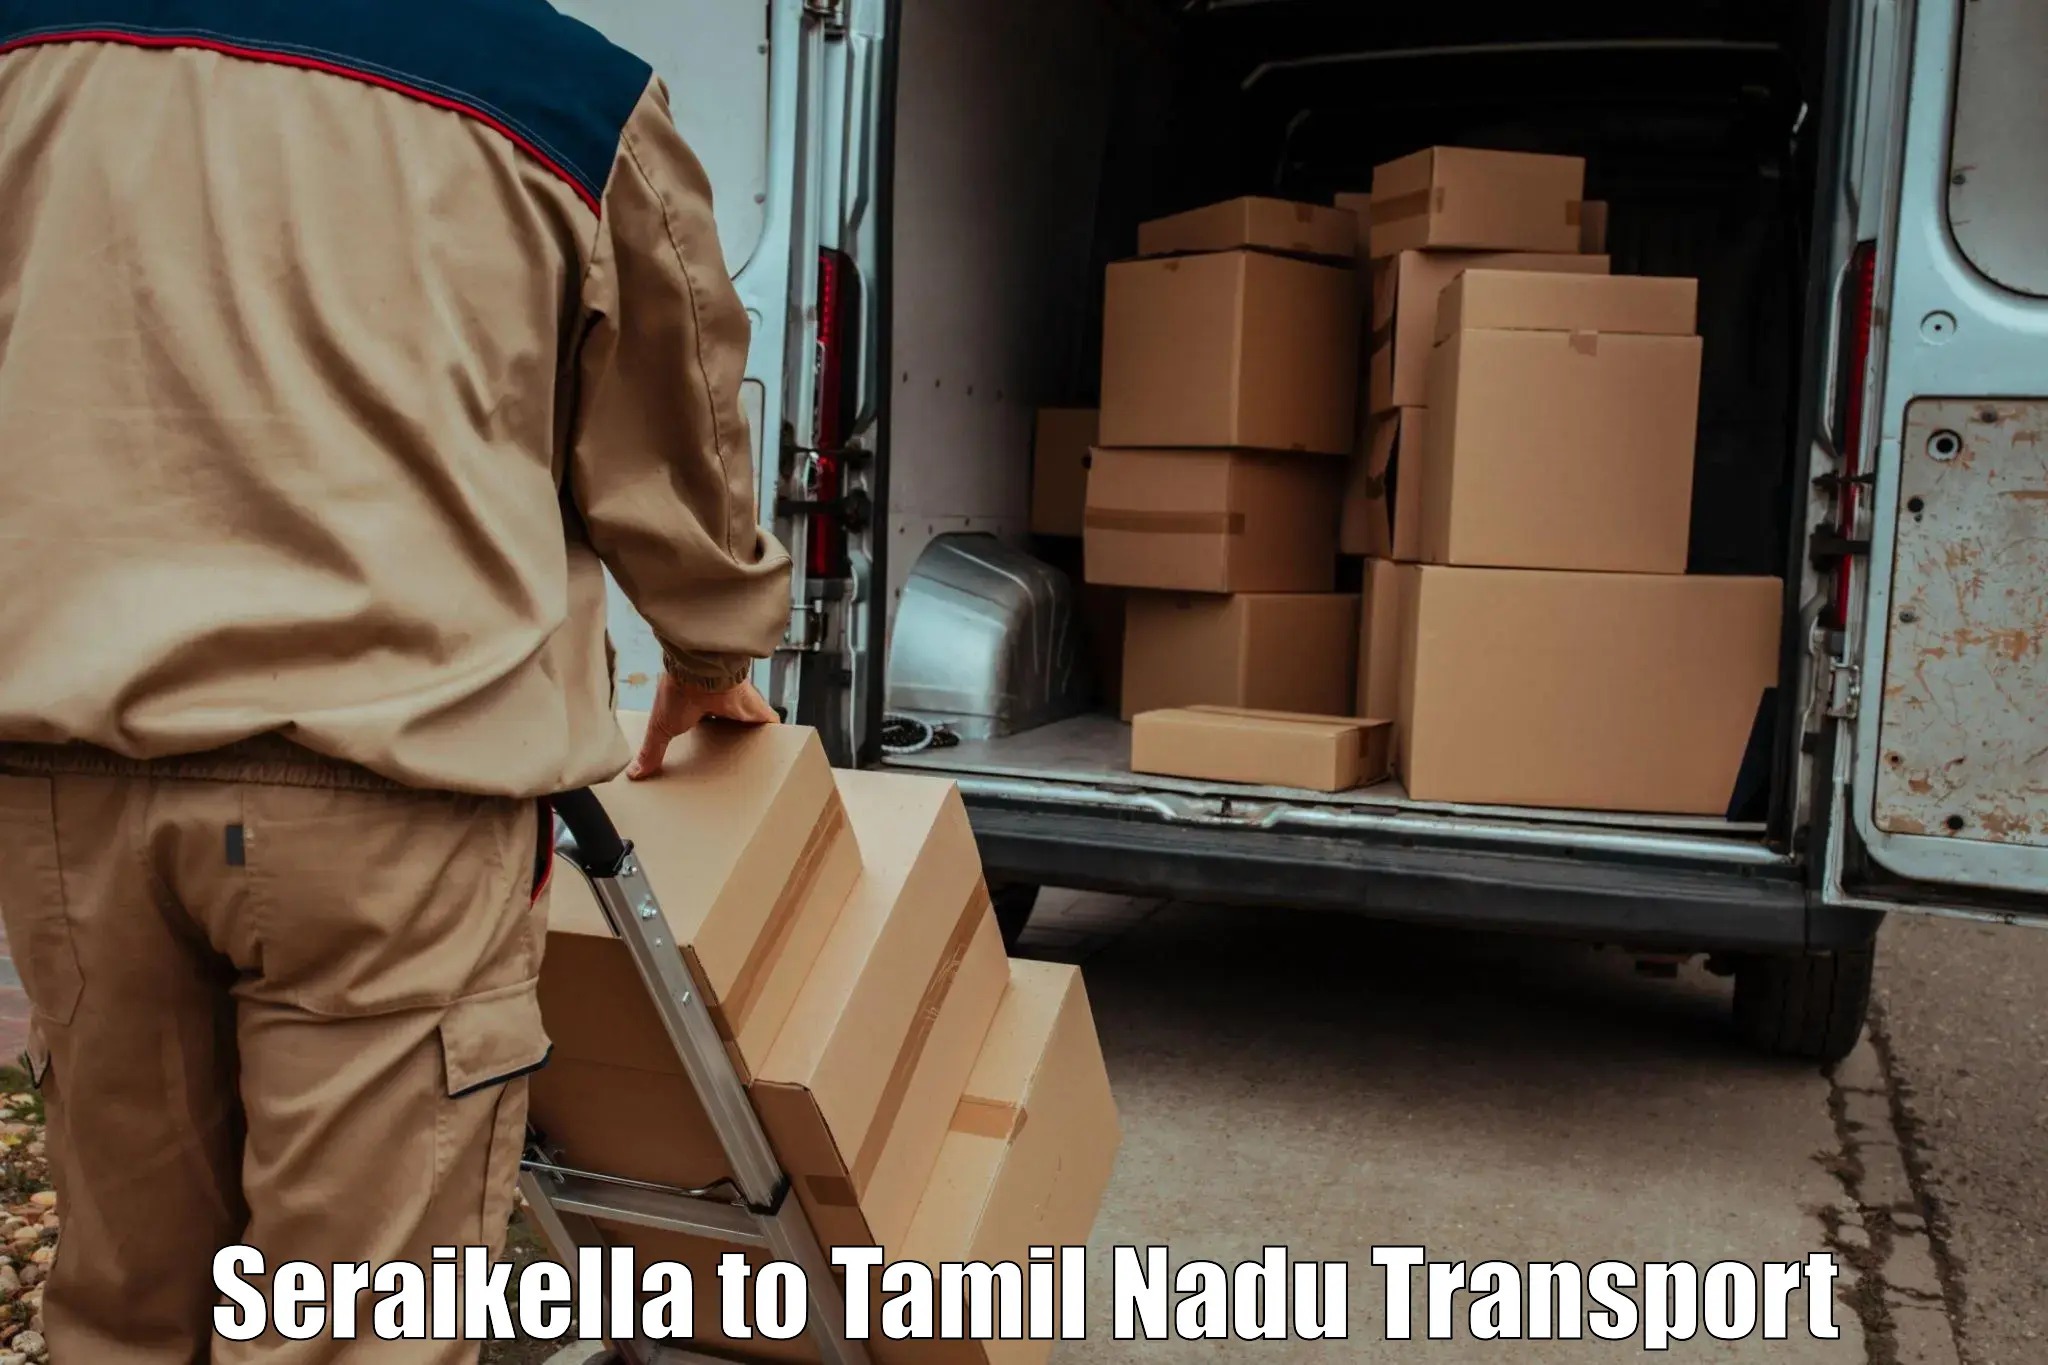 Road transport online services Seraikella to Tiruchi